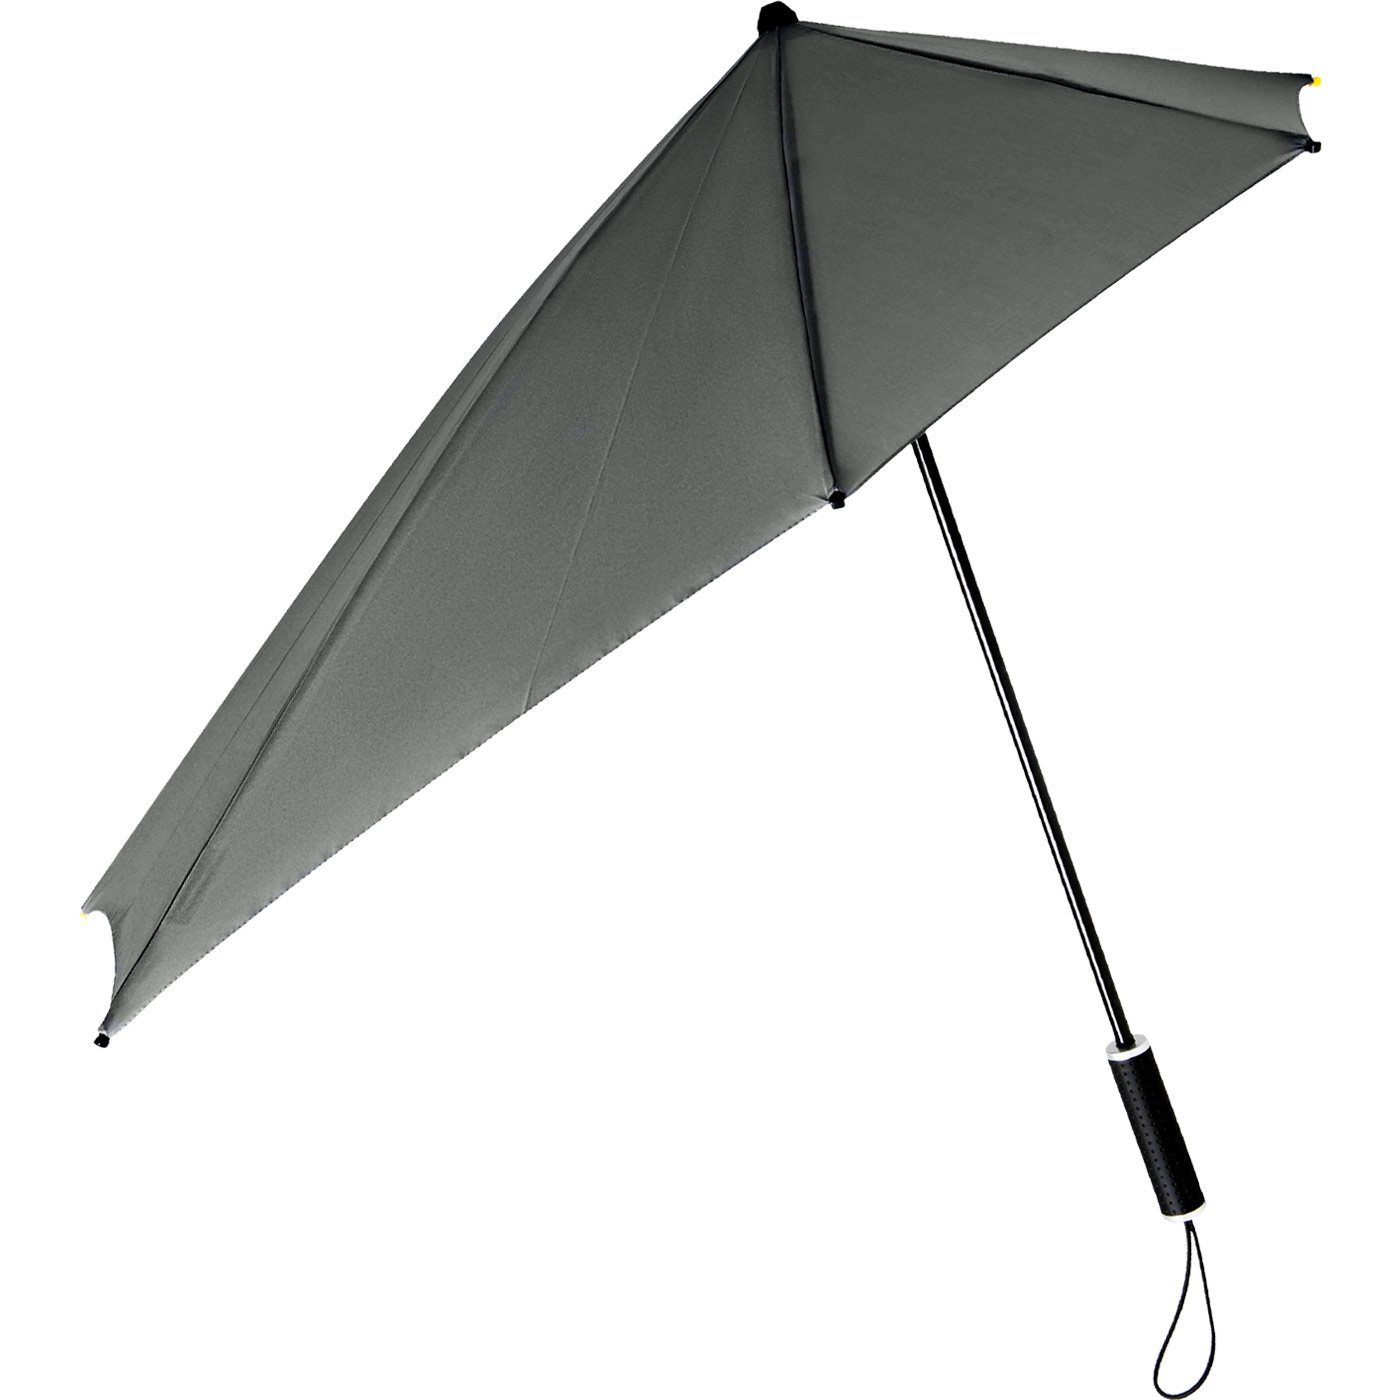 seine Impliva sich Sturmschirm Regenschirm, km/h Stockregenschirm durch Wind, Form in bis dreht Schirm hält aus aerodynamischer 100 den besondere zu STORMaxi der